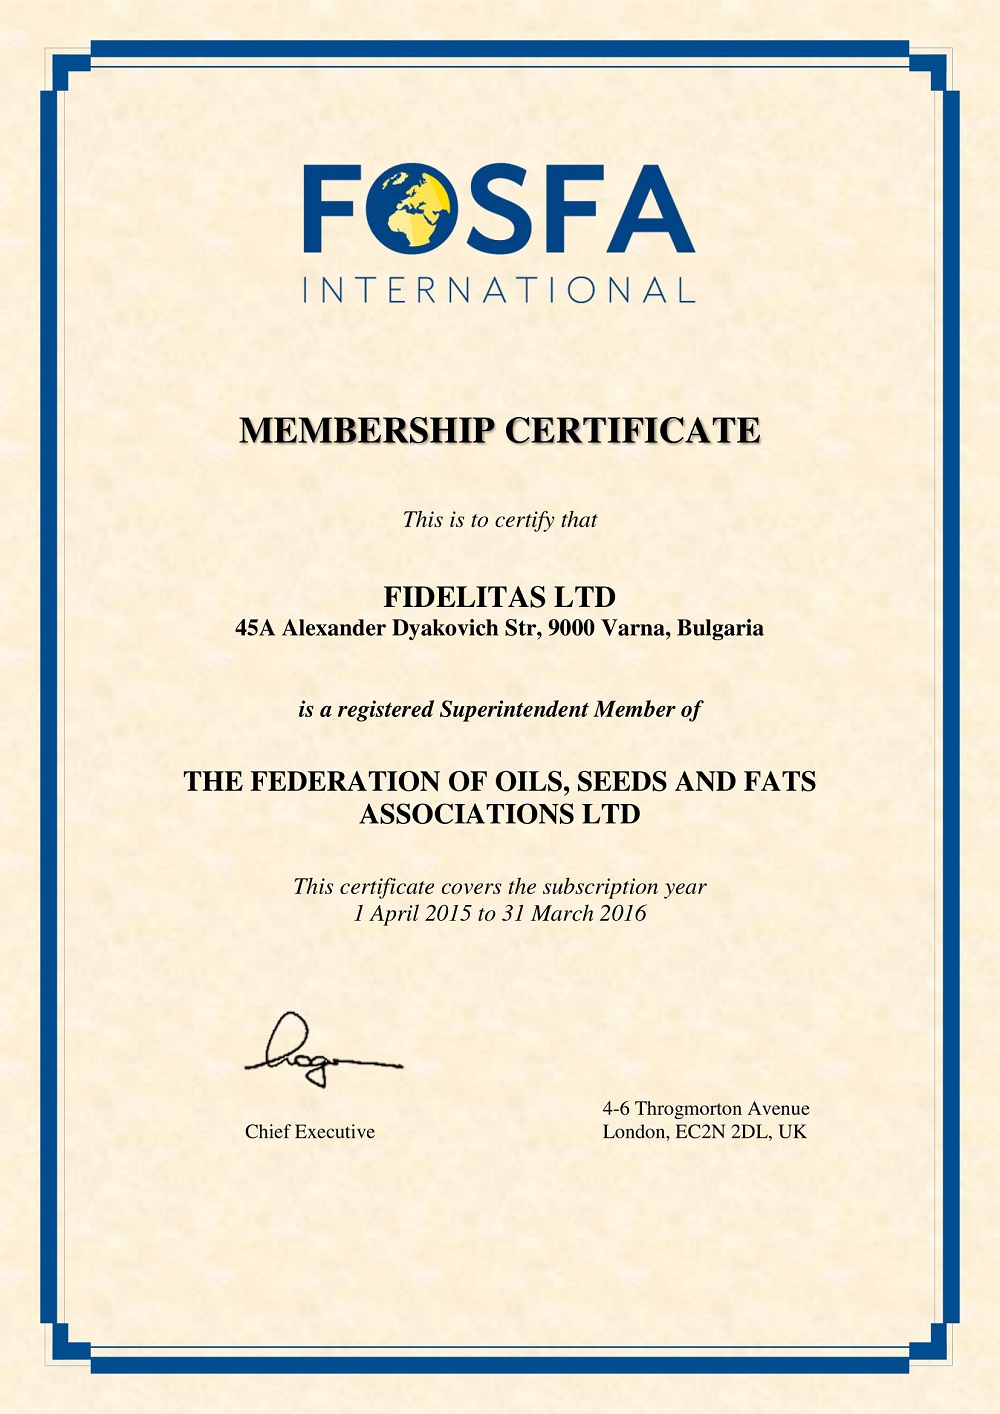 Federation’s Membership Certificate Sample